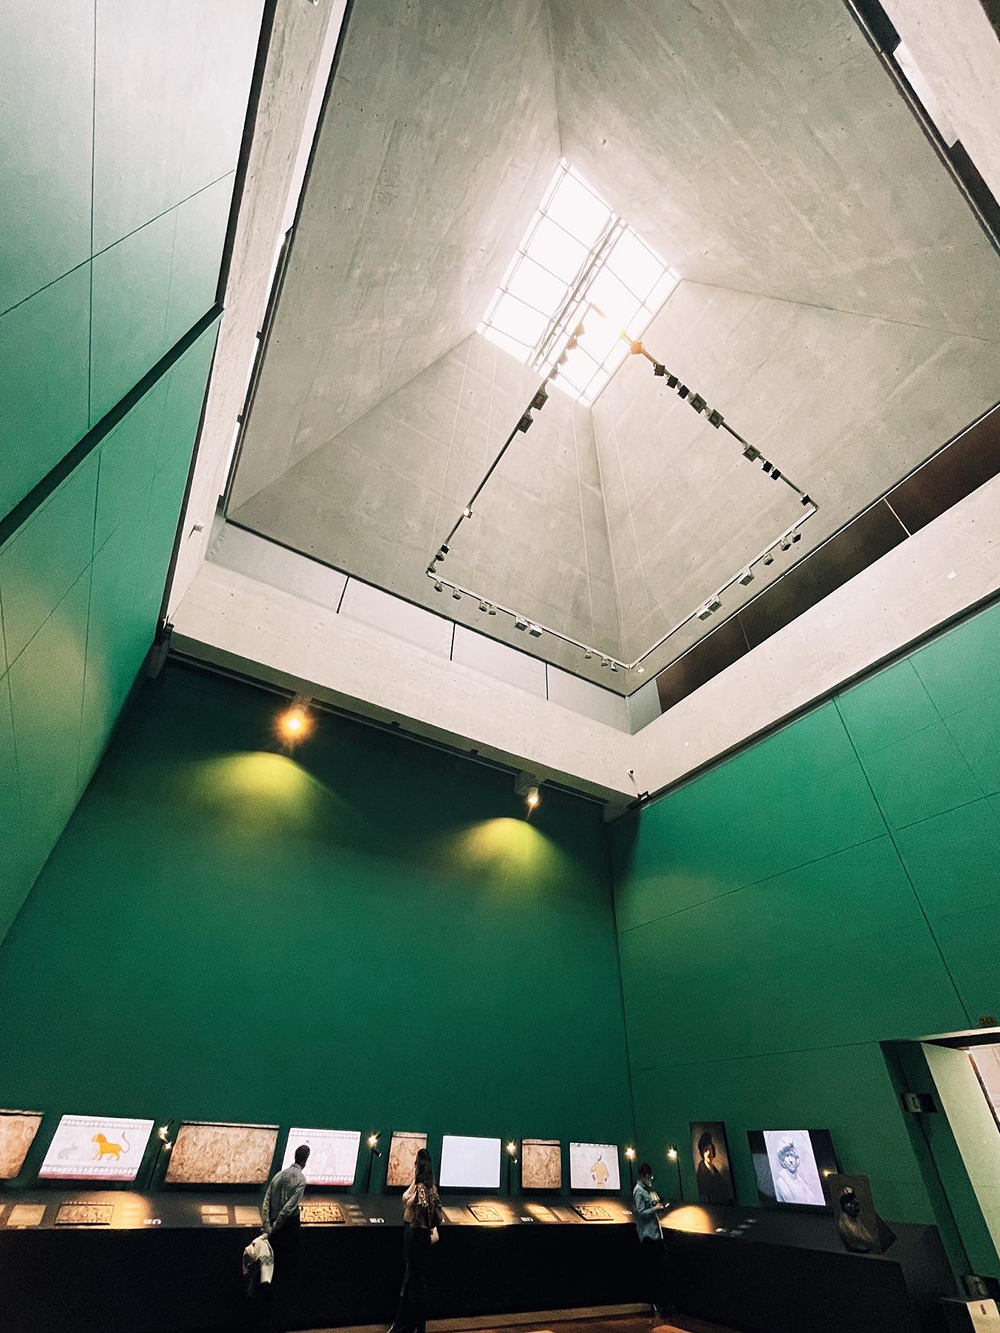 Слева на фото — Главный штаб Эрмитажа, в залах которого фотогеничный цвет стен, высокие потолки и массивные двери. Справа — остров Новая Голландия осенью